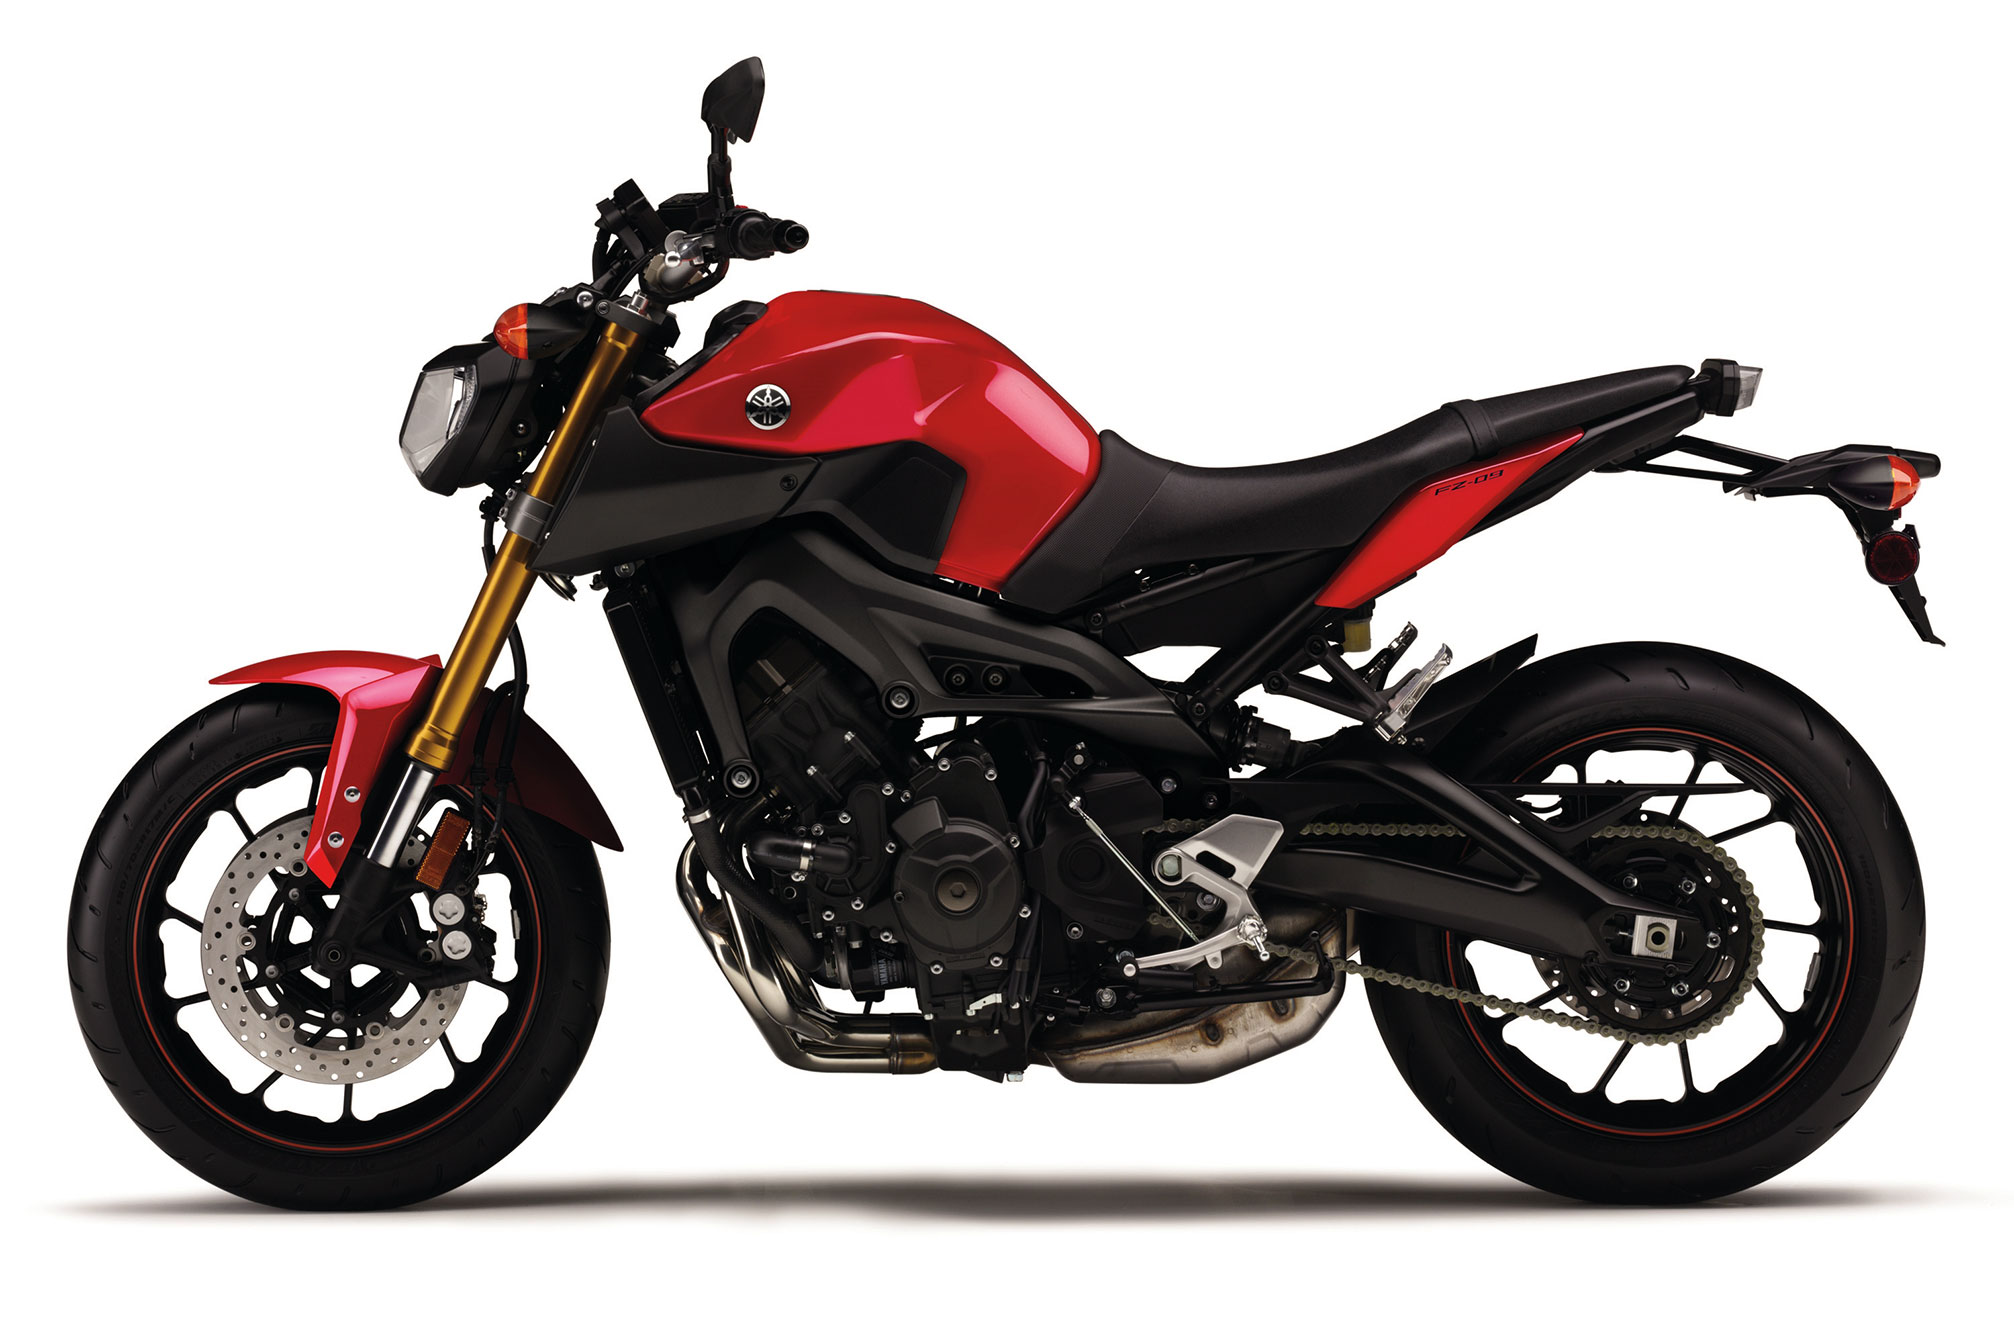 2014 Yamaha Fz-09 Bike Motorbike - Rouser 150 Price Philippines 2018 -  2014x1343 Wallpaper 